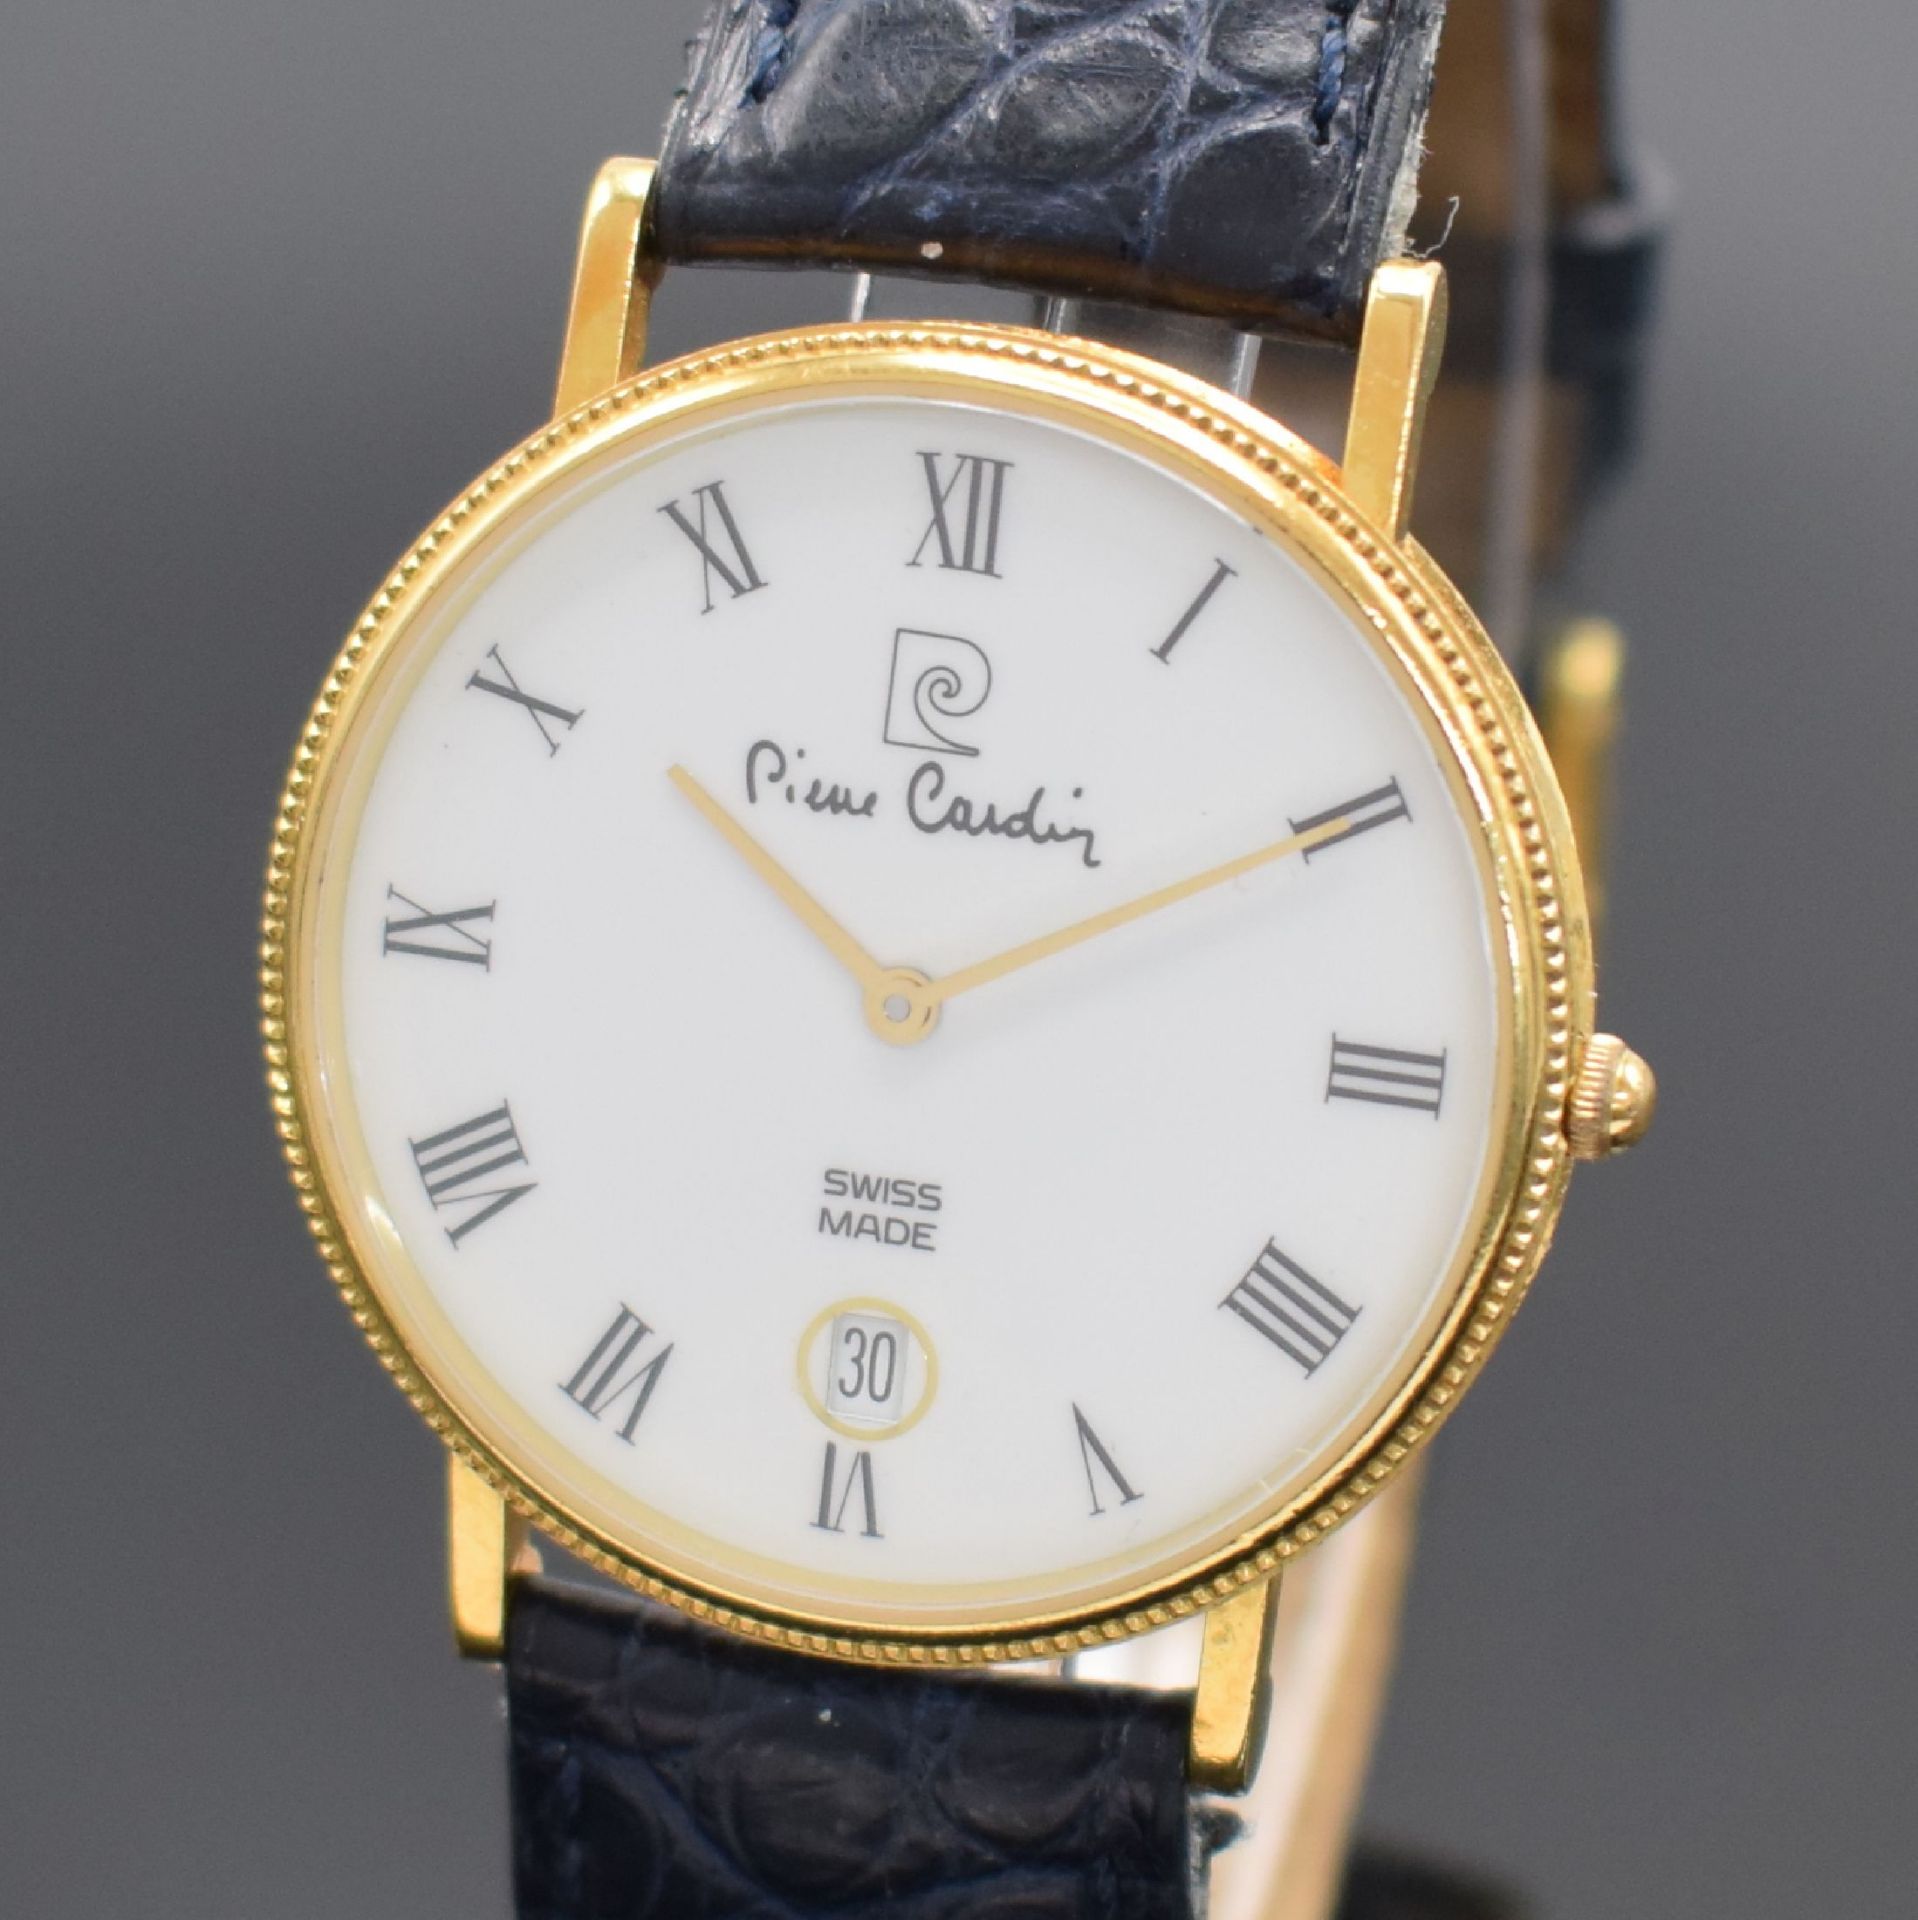 PIERRE CARDIN Armbanduhr in GG 750/000,  Schweiz verk. lt. - Bild 2 aus 5